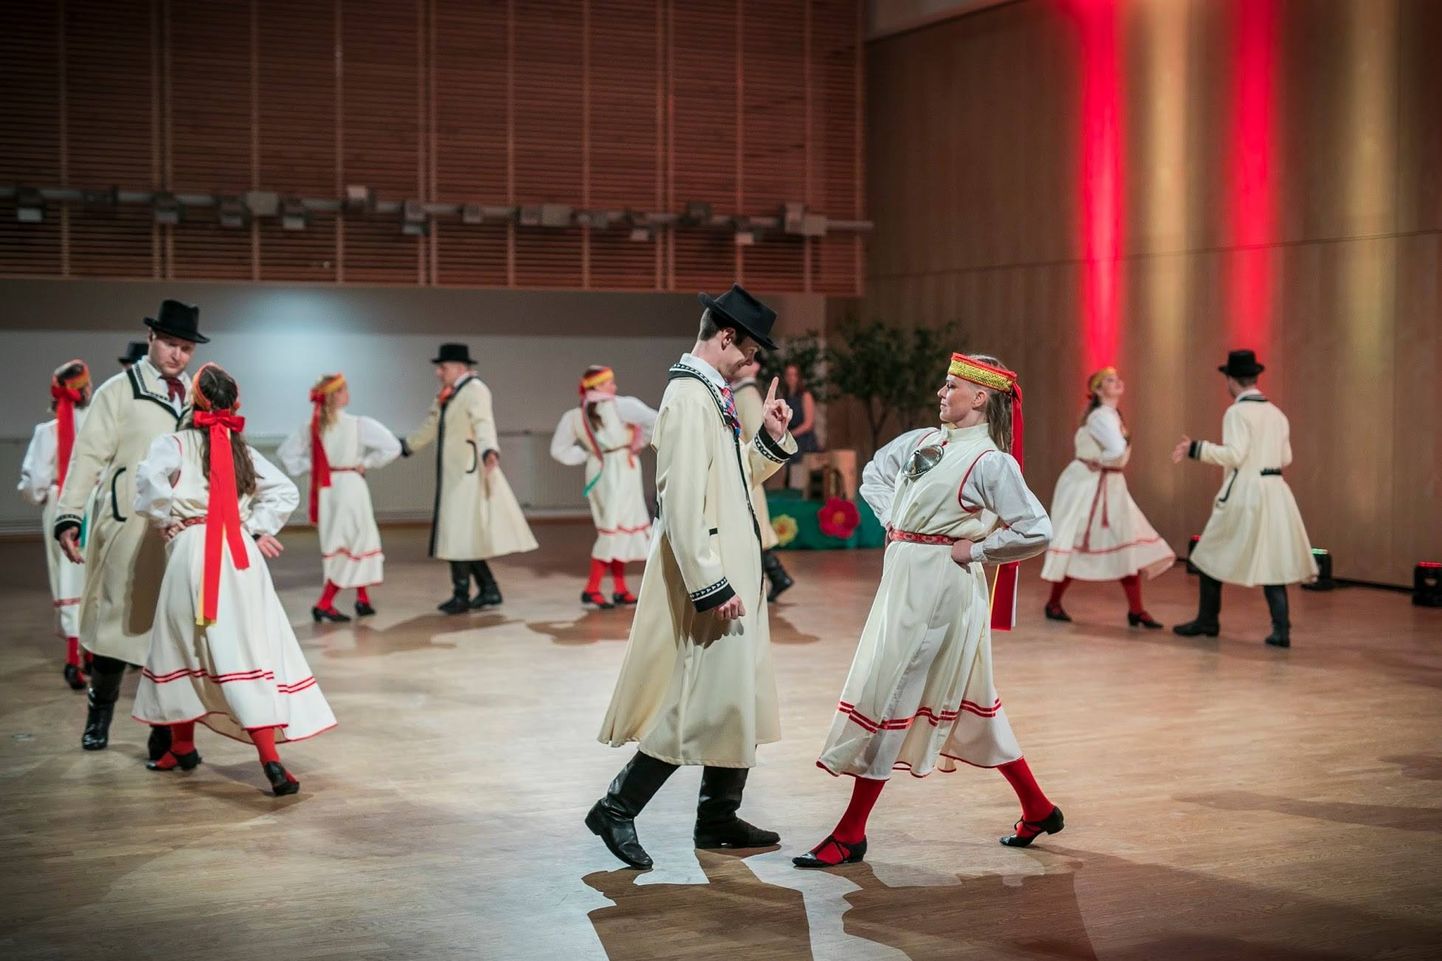 Pühapäeval annab Kohtla-Järve kultuurikeskuses kontserdi nimekas rahvatantsuansambel Kuljus.